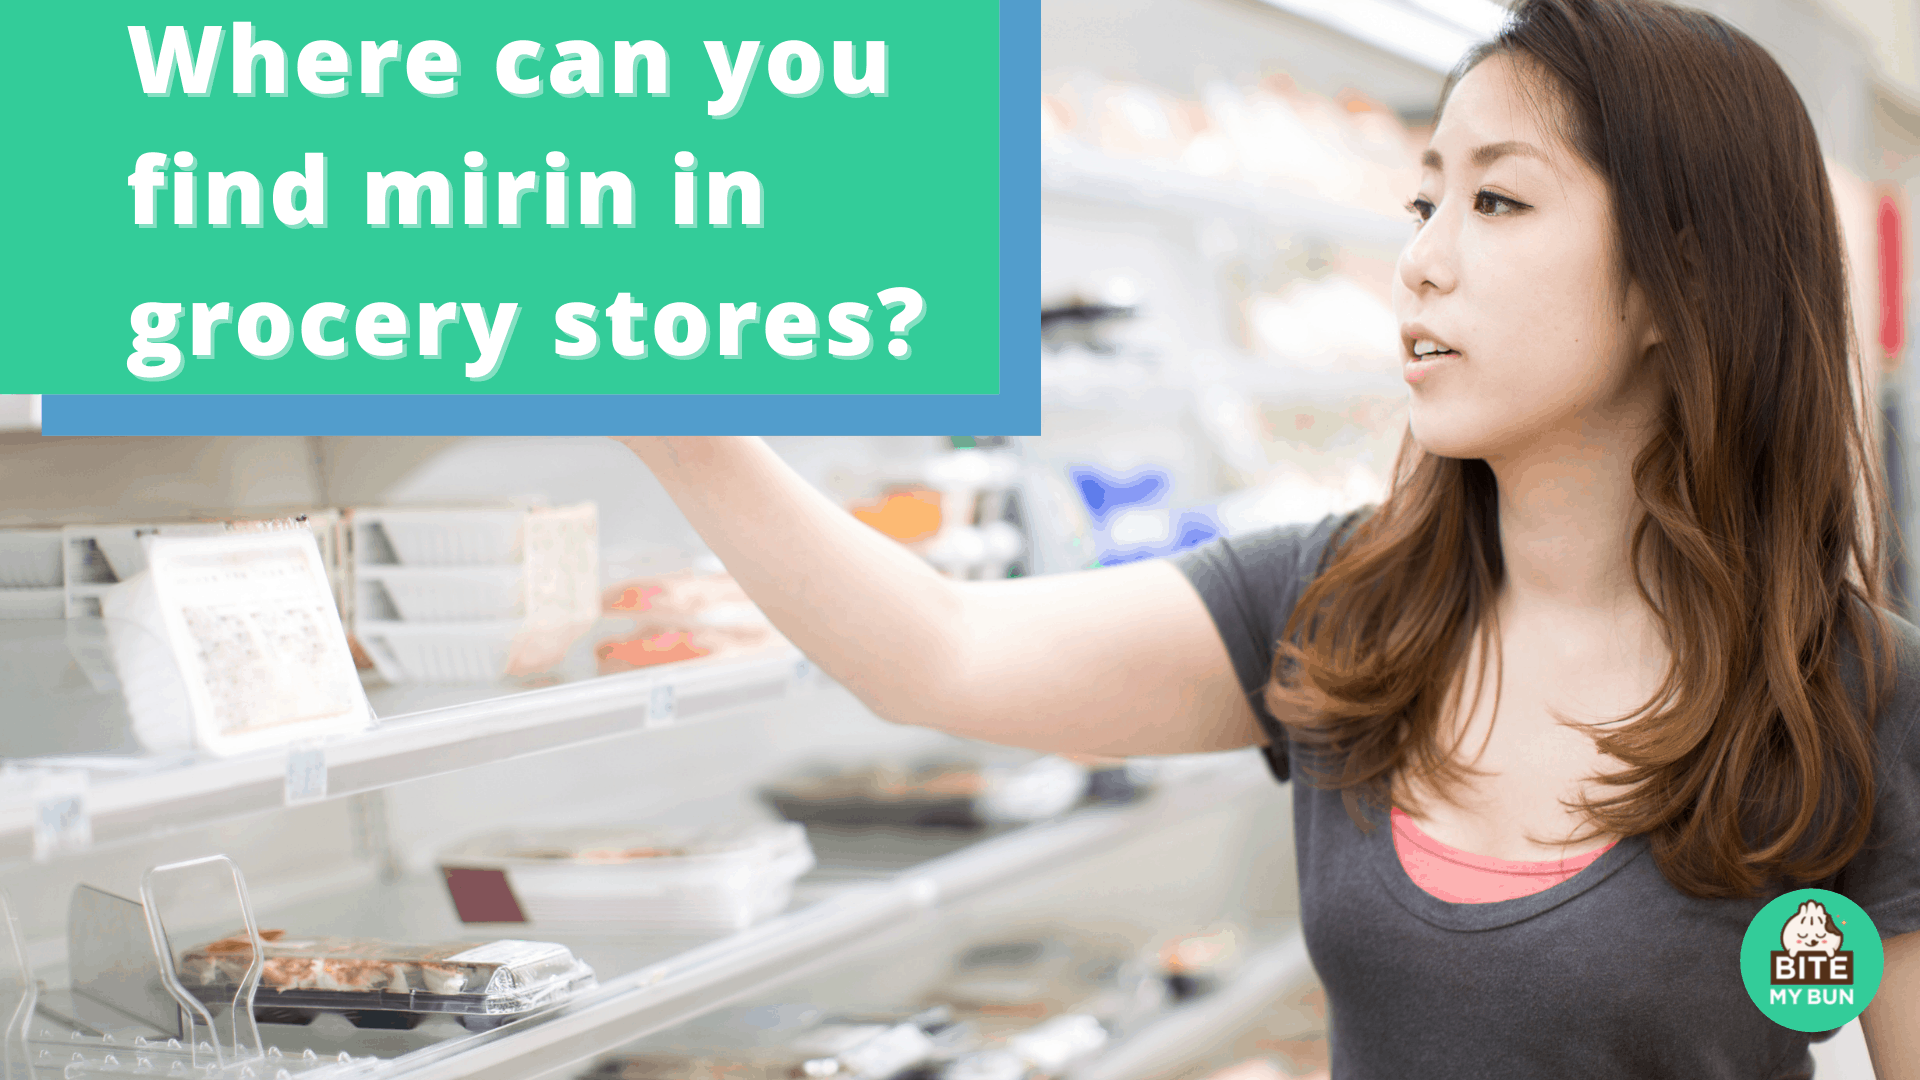 ¿Dónde puedes encontrar mirin en las tiendas de comestibles?